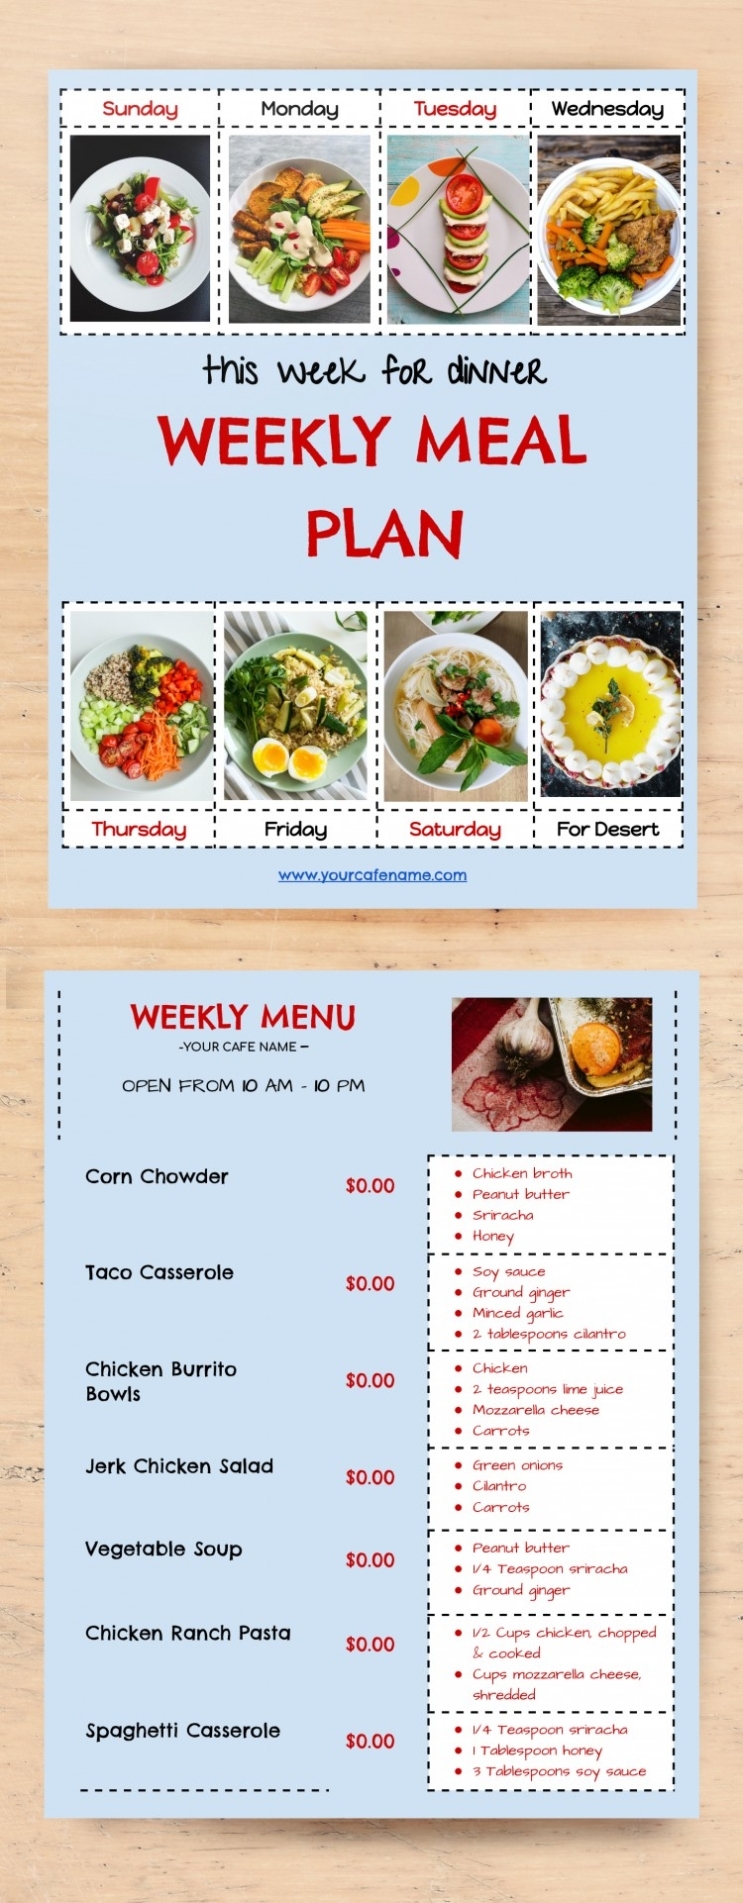 Free Weekly Dinner Menu Template In Google Docs for Menu Template Google Docs